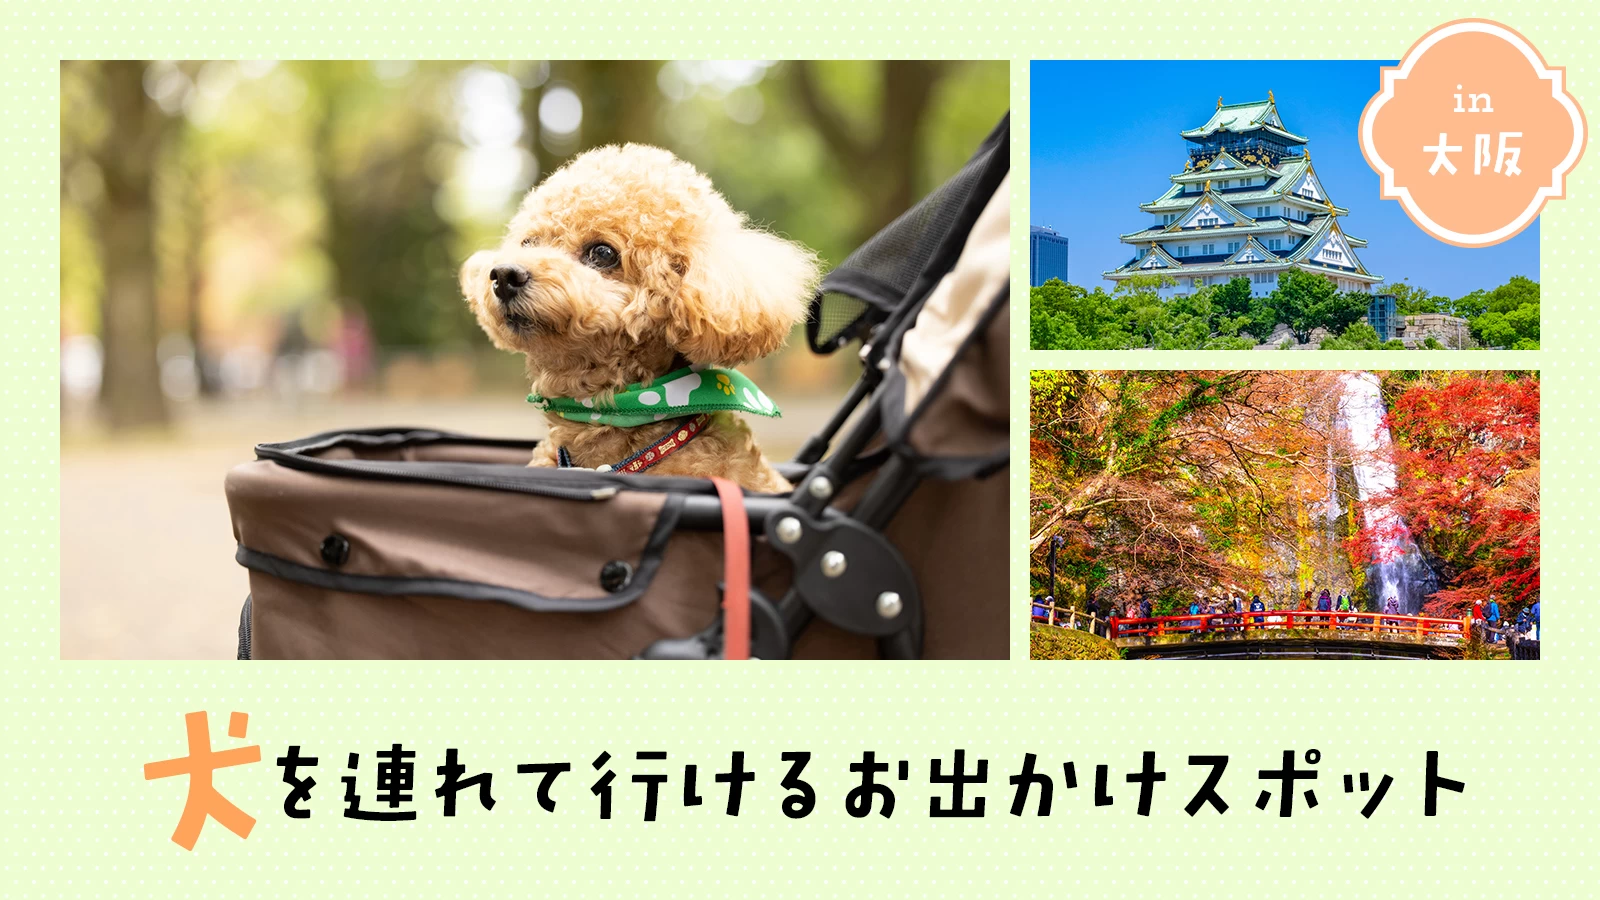 【大阪近郊・お出かけ】犬を連れて行けるお出かけスポット14選